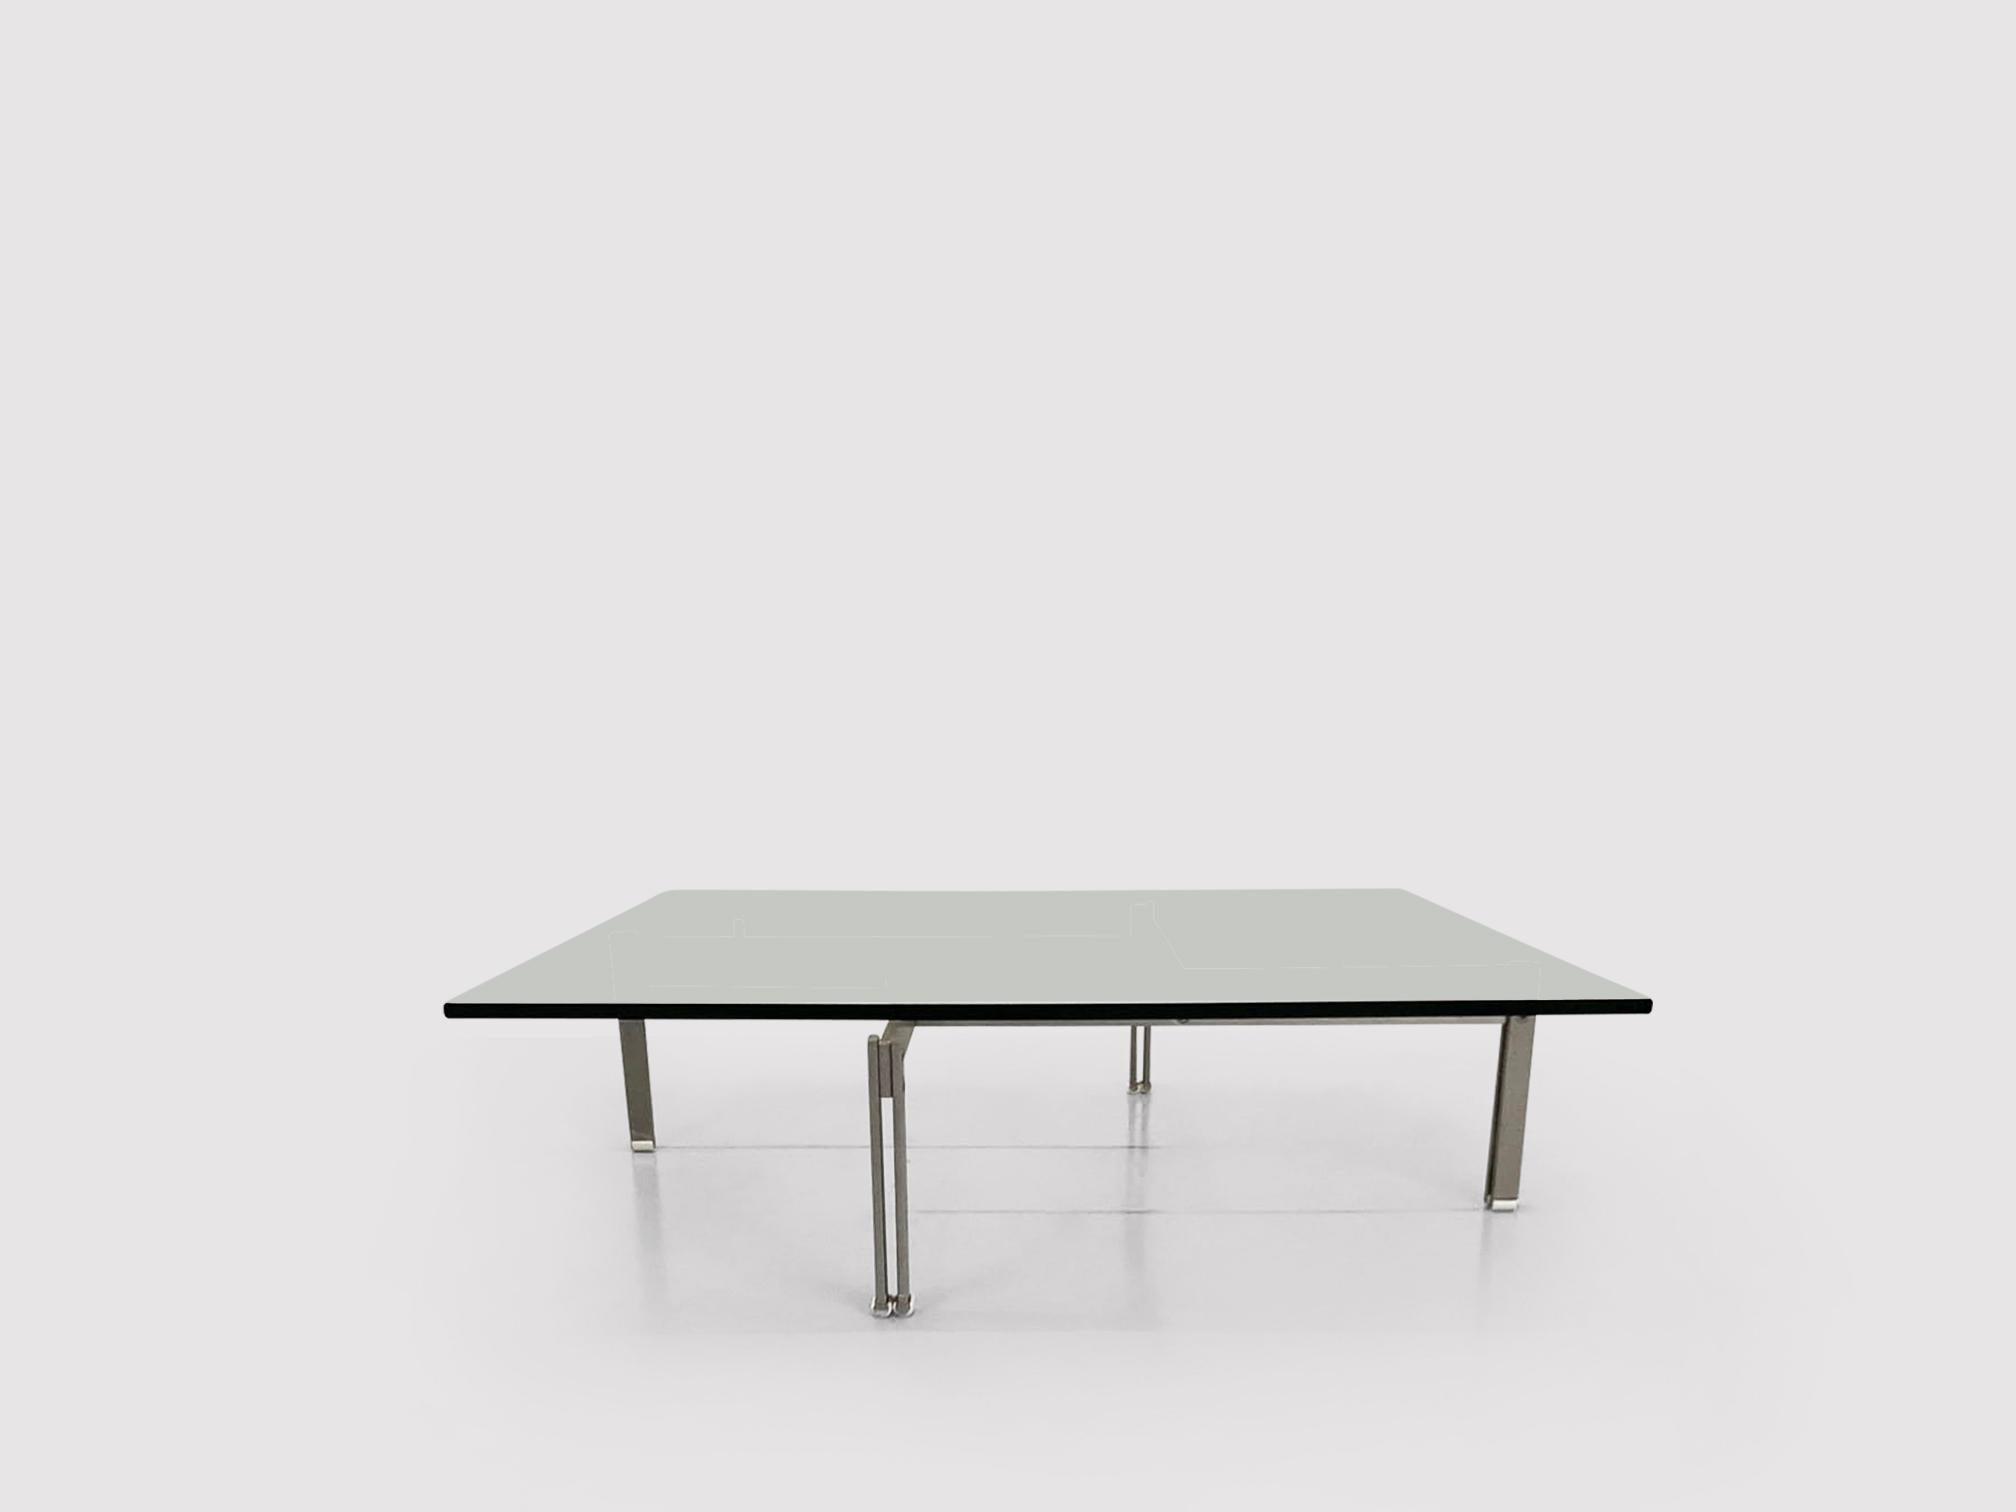 La série Onda de Giovanni Offredi pour Saporiti Italia est un parfait exemple du design moderniste italien, à la limite de l'ère spatiale. La série Onda se composait d'une table basse, d'une chaise longue et de canapés (également appelés